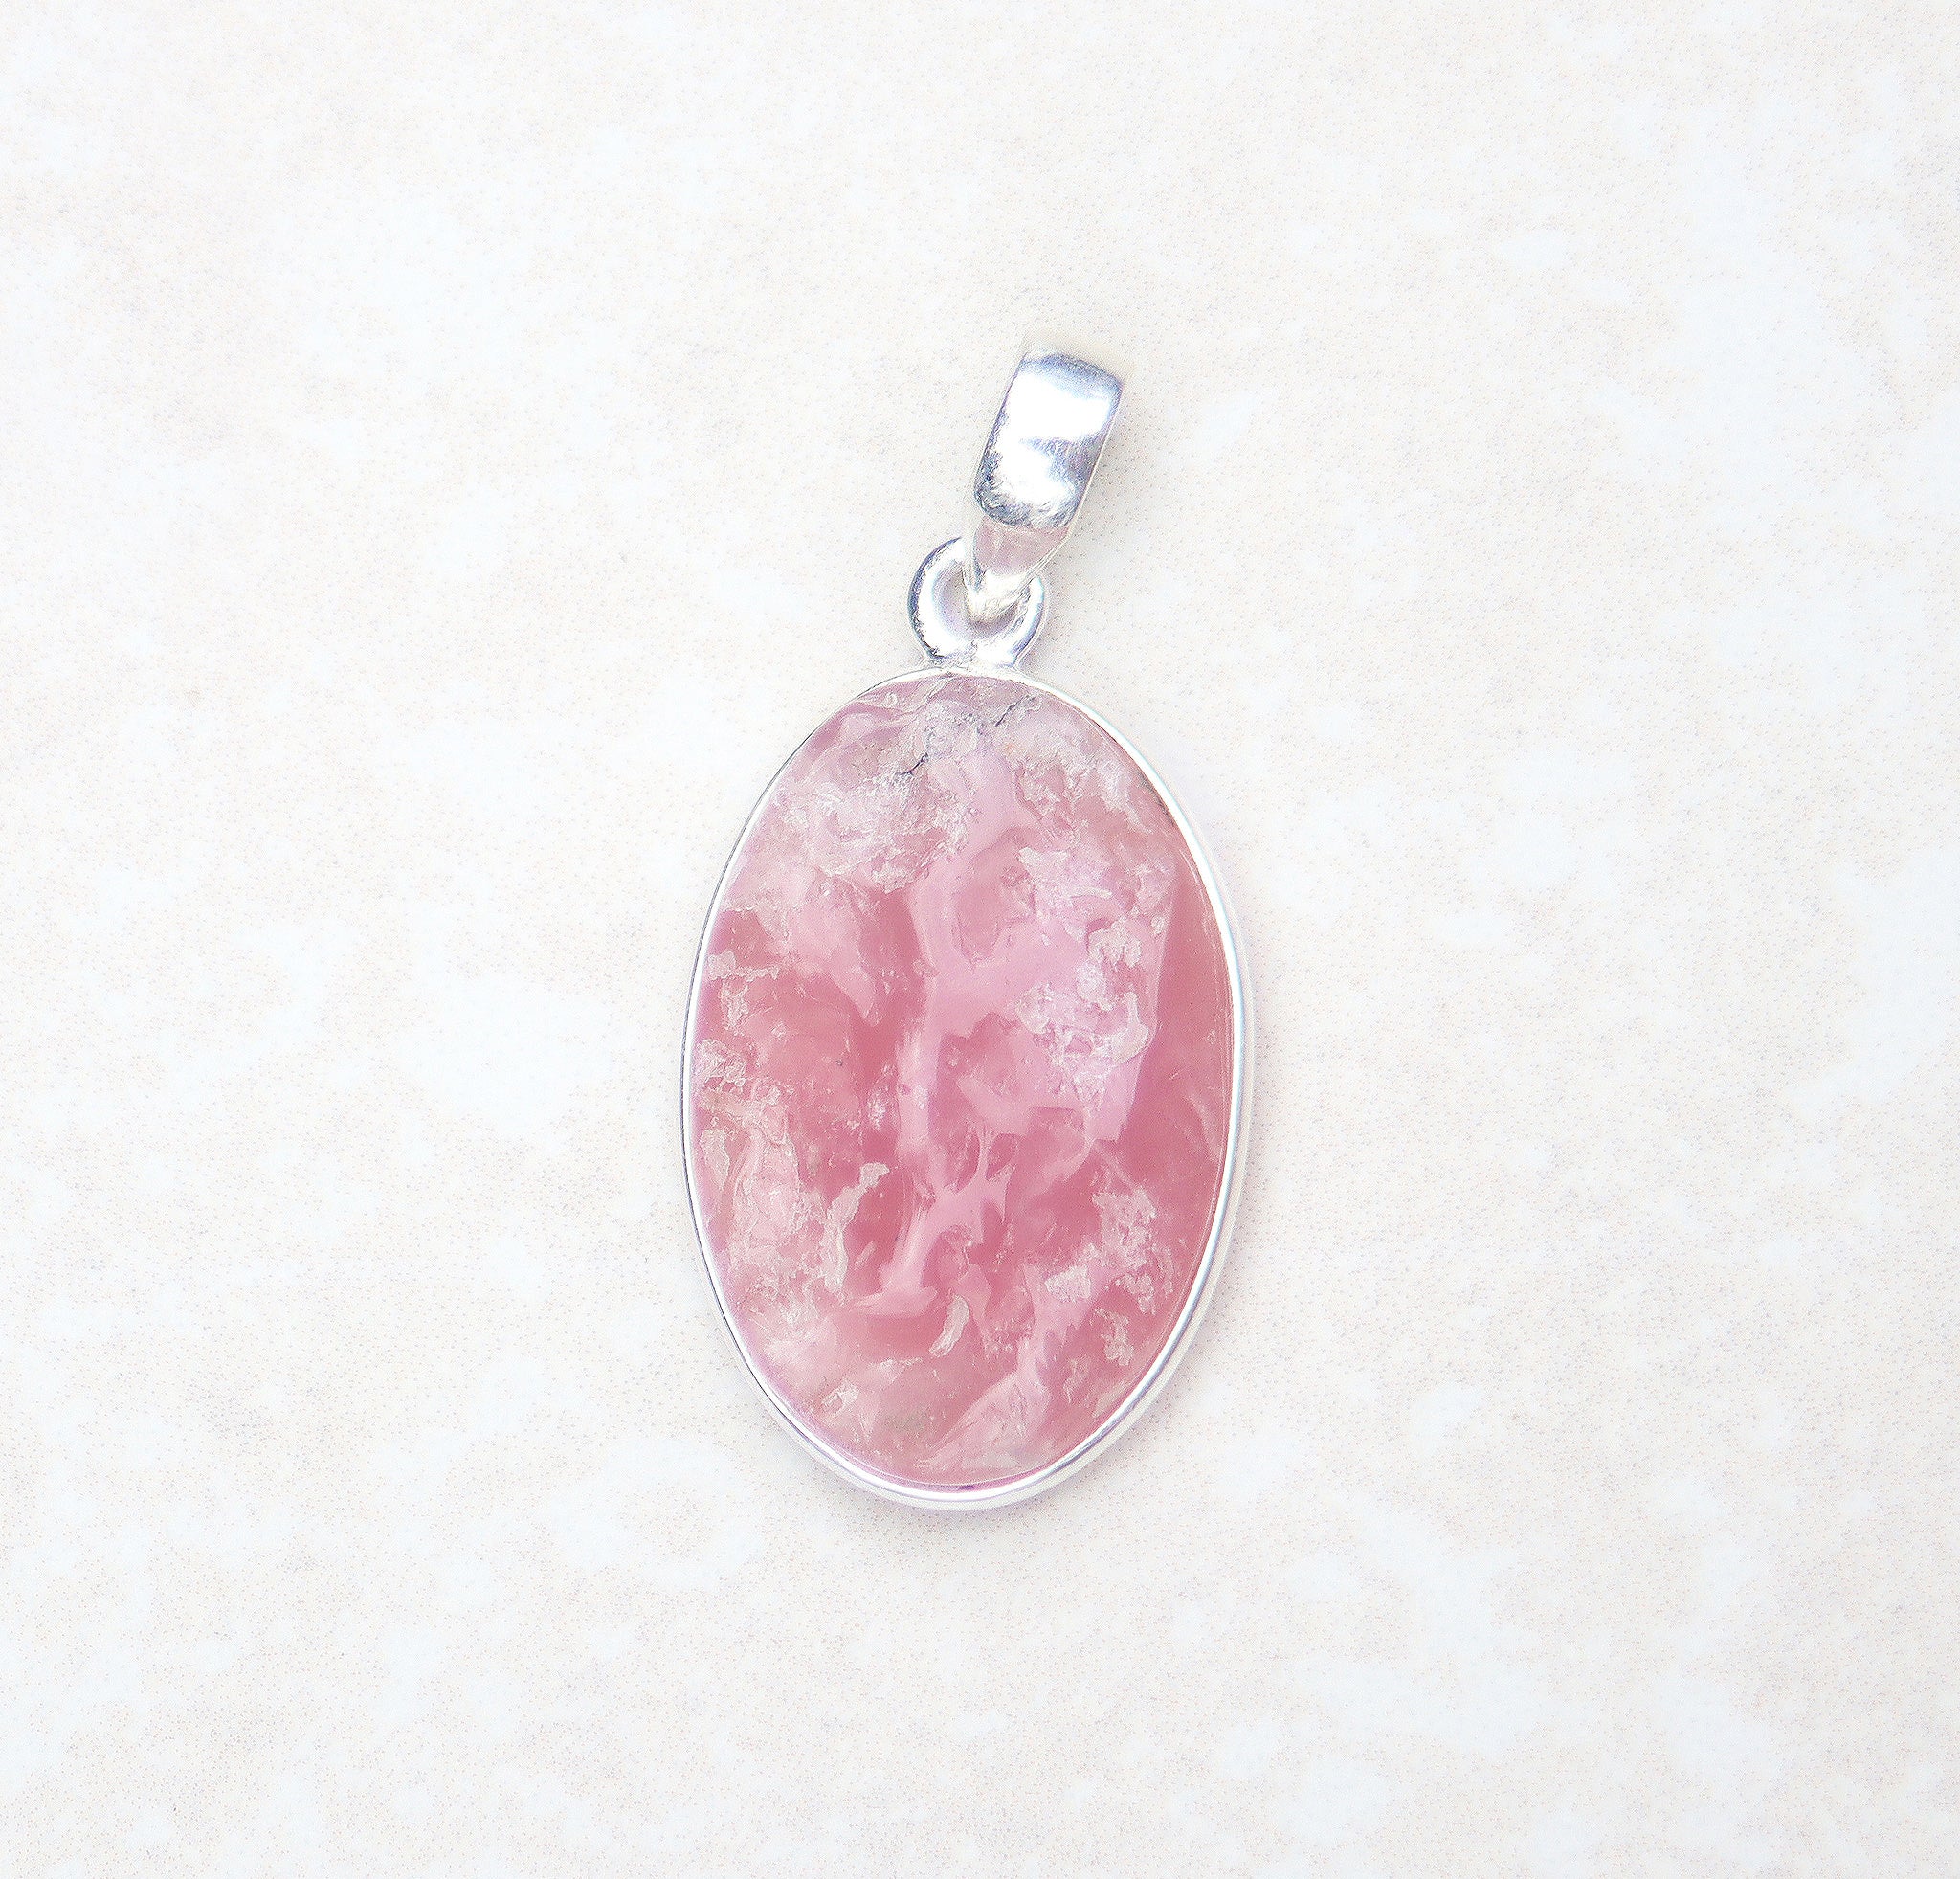 Silver rough rose quartz pendant